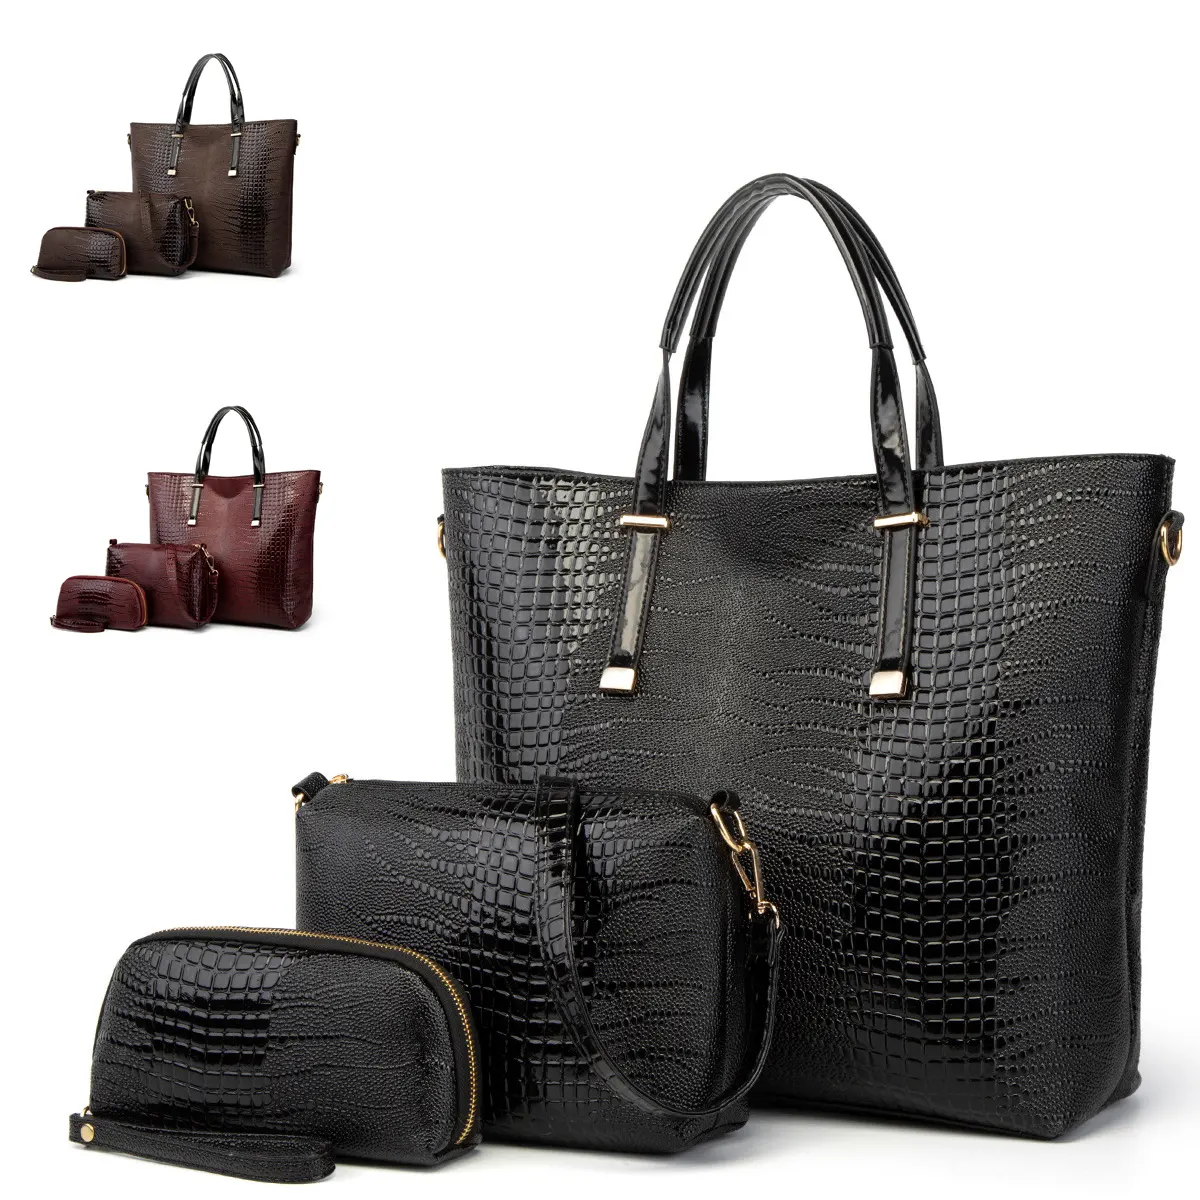 OEM сумки, сумки, основная черная крокодиловая большая сумка для леди, кожаная сумка, женские большие сумки, комплект женских сумок через плечо